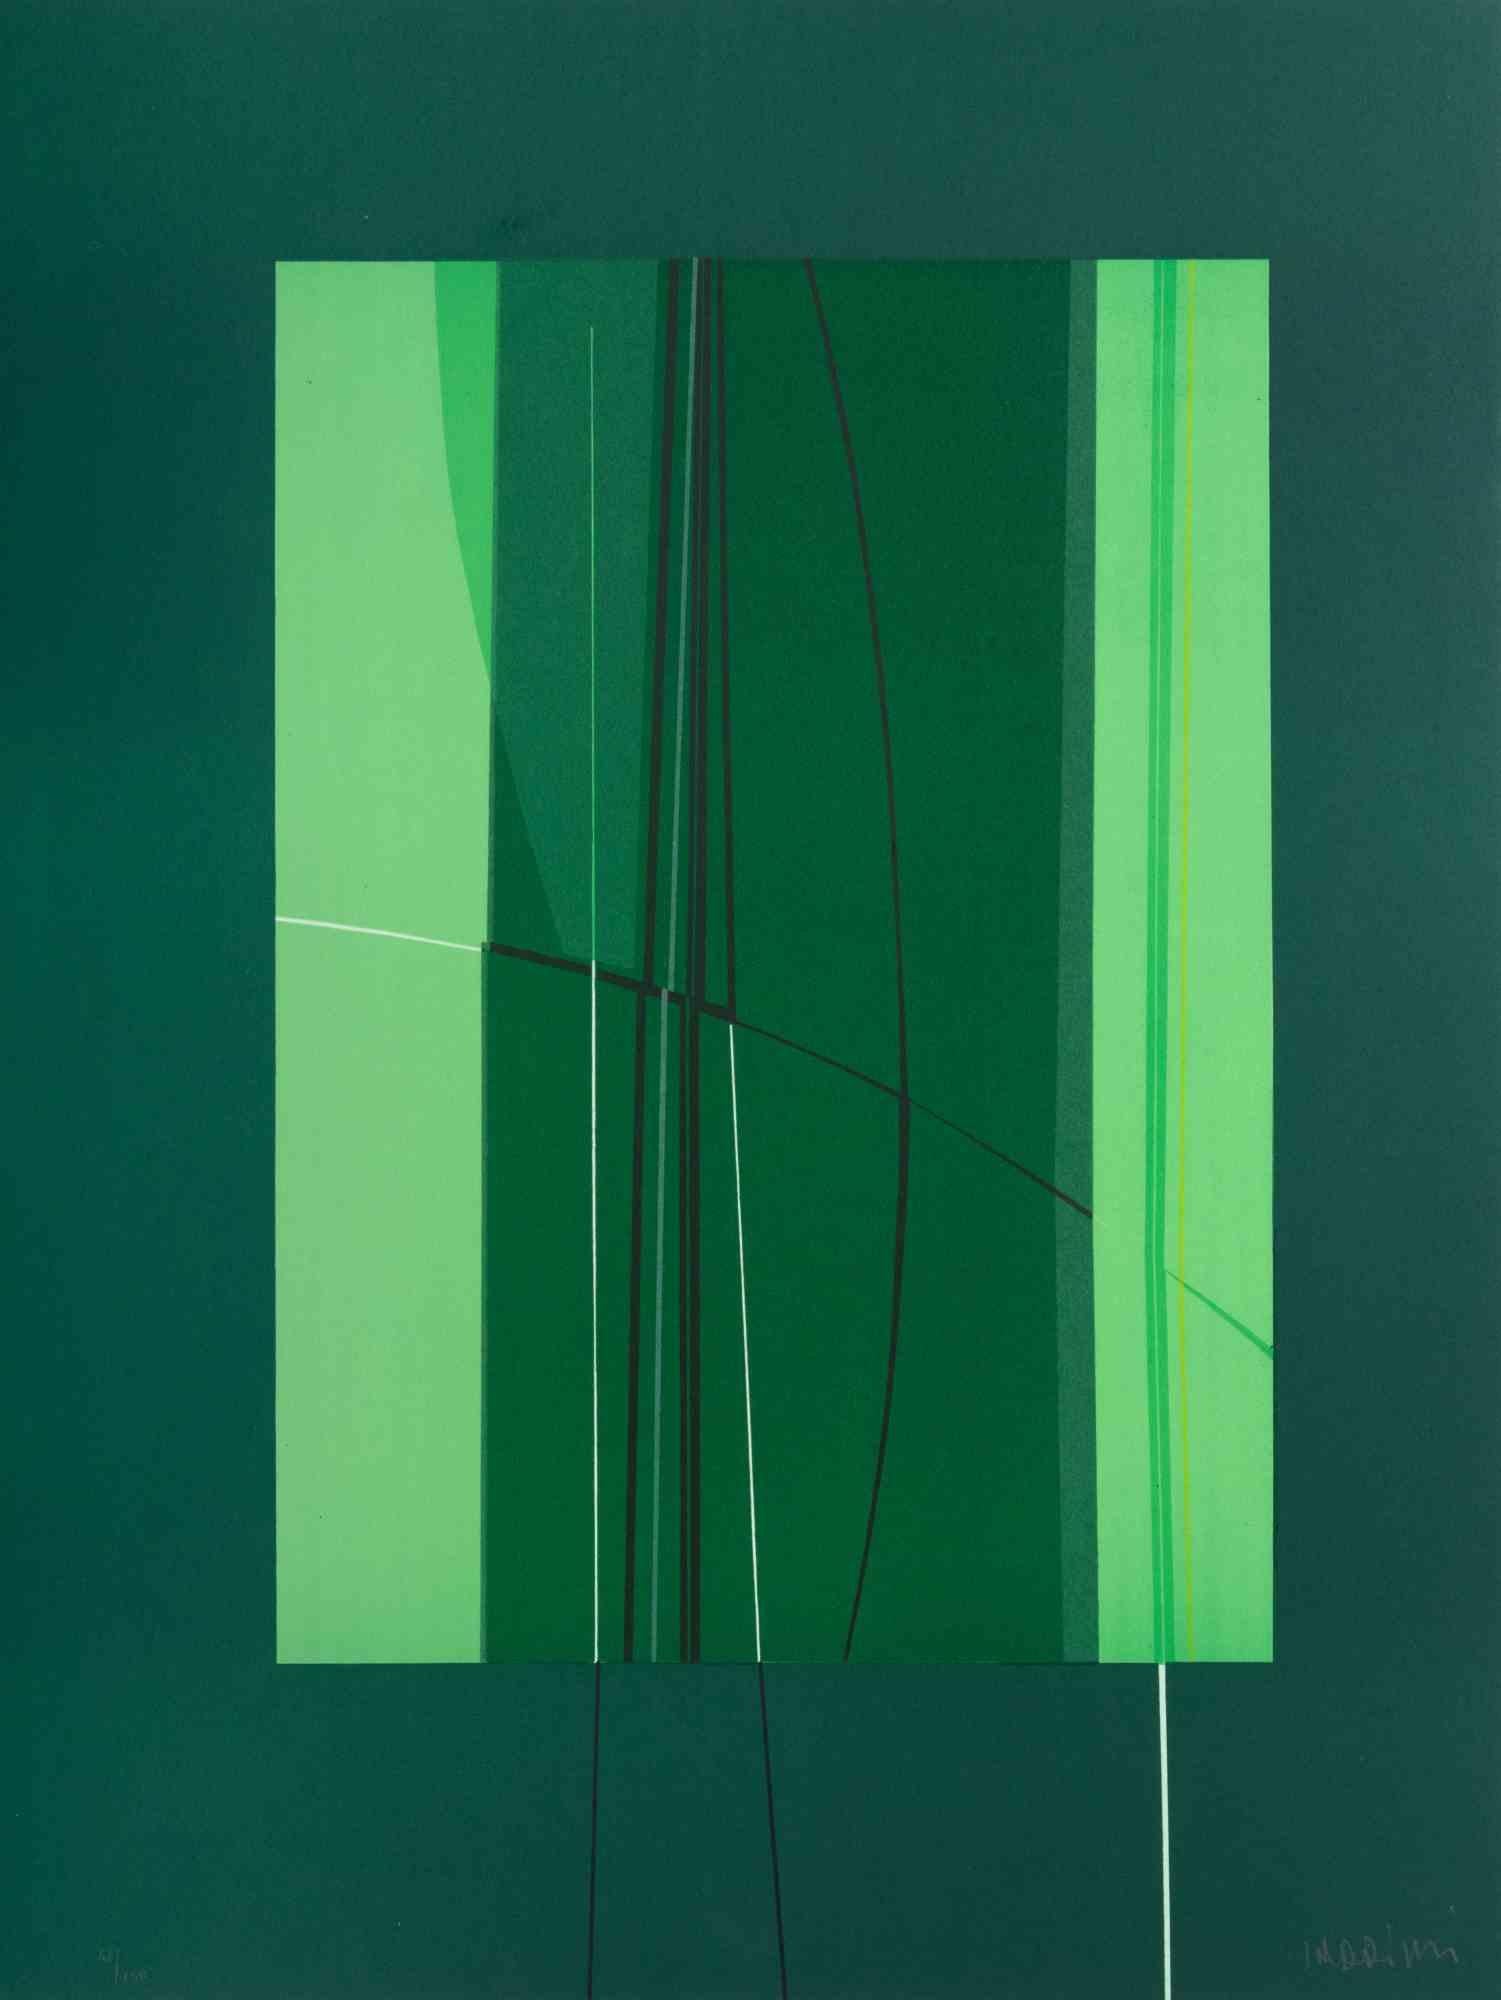 Green est une œuvre d'art contemporain réalisée par Lorenzo Indrimi dans les années 1970.

Lithographie en couleurs mélangées.

Signé à la main et daté dans la marge inférieure.

Édition de 110/150. 